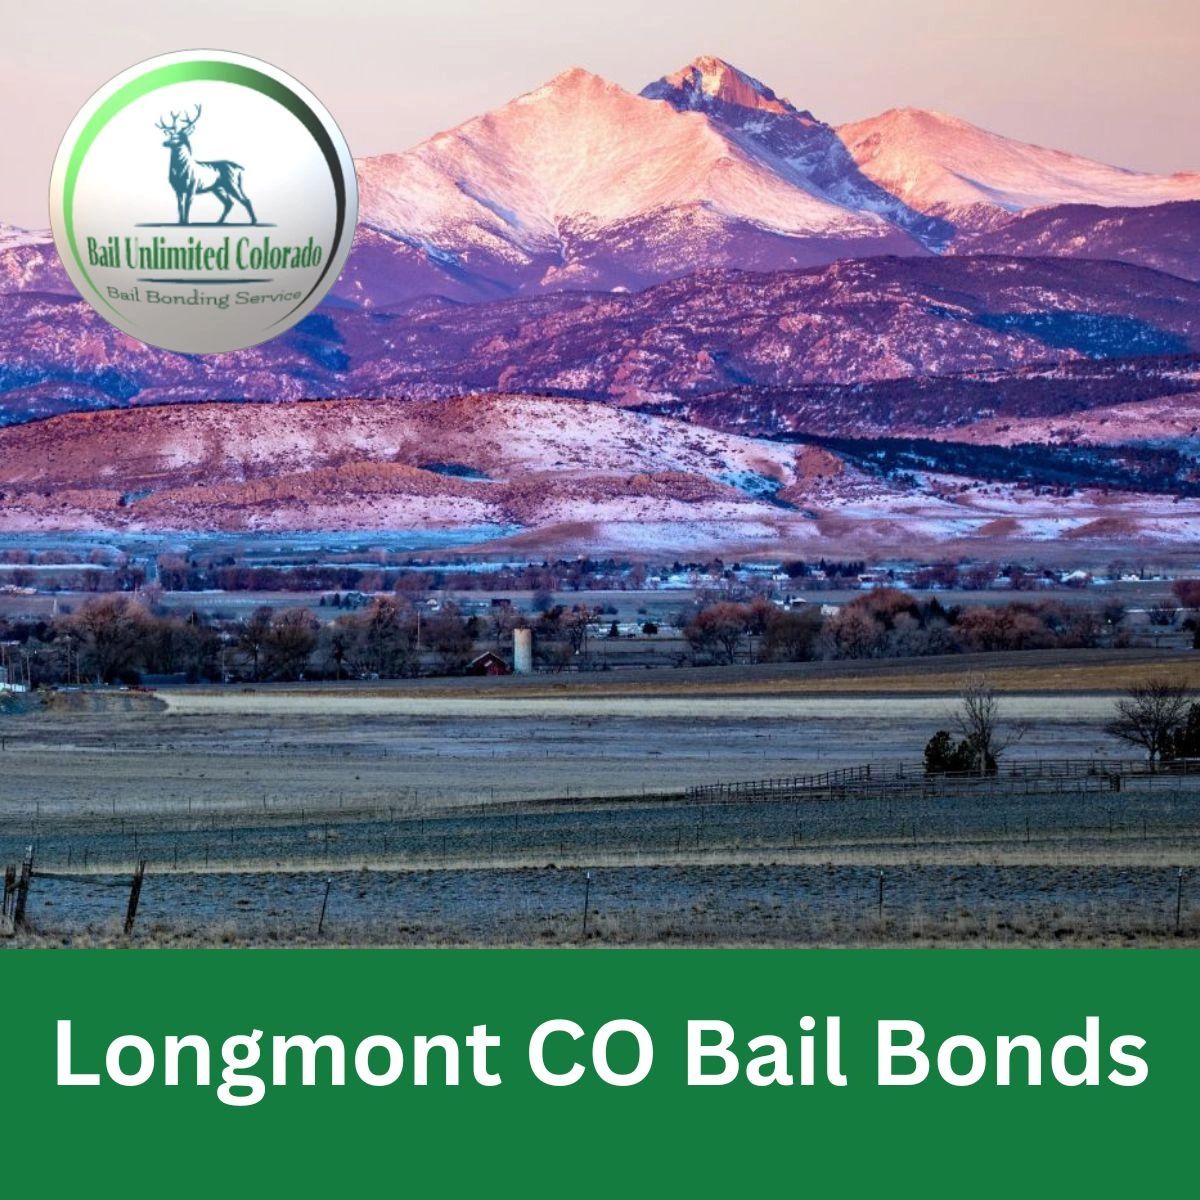 LOGO Bail Unlimited Colorado TEXT Longmont CO Bail Bonds IMAGE Longmont Colorado 40.1672, -105.10192